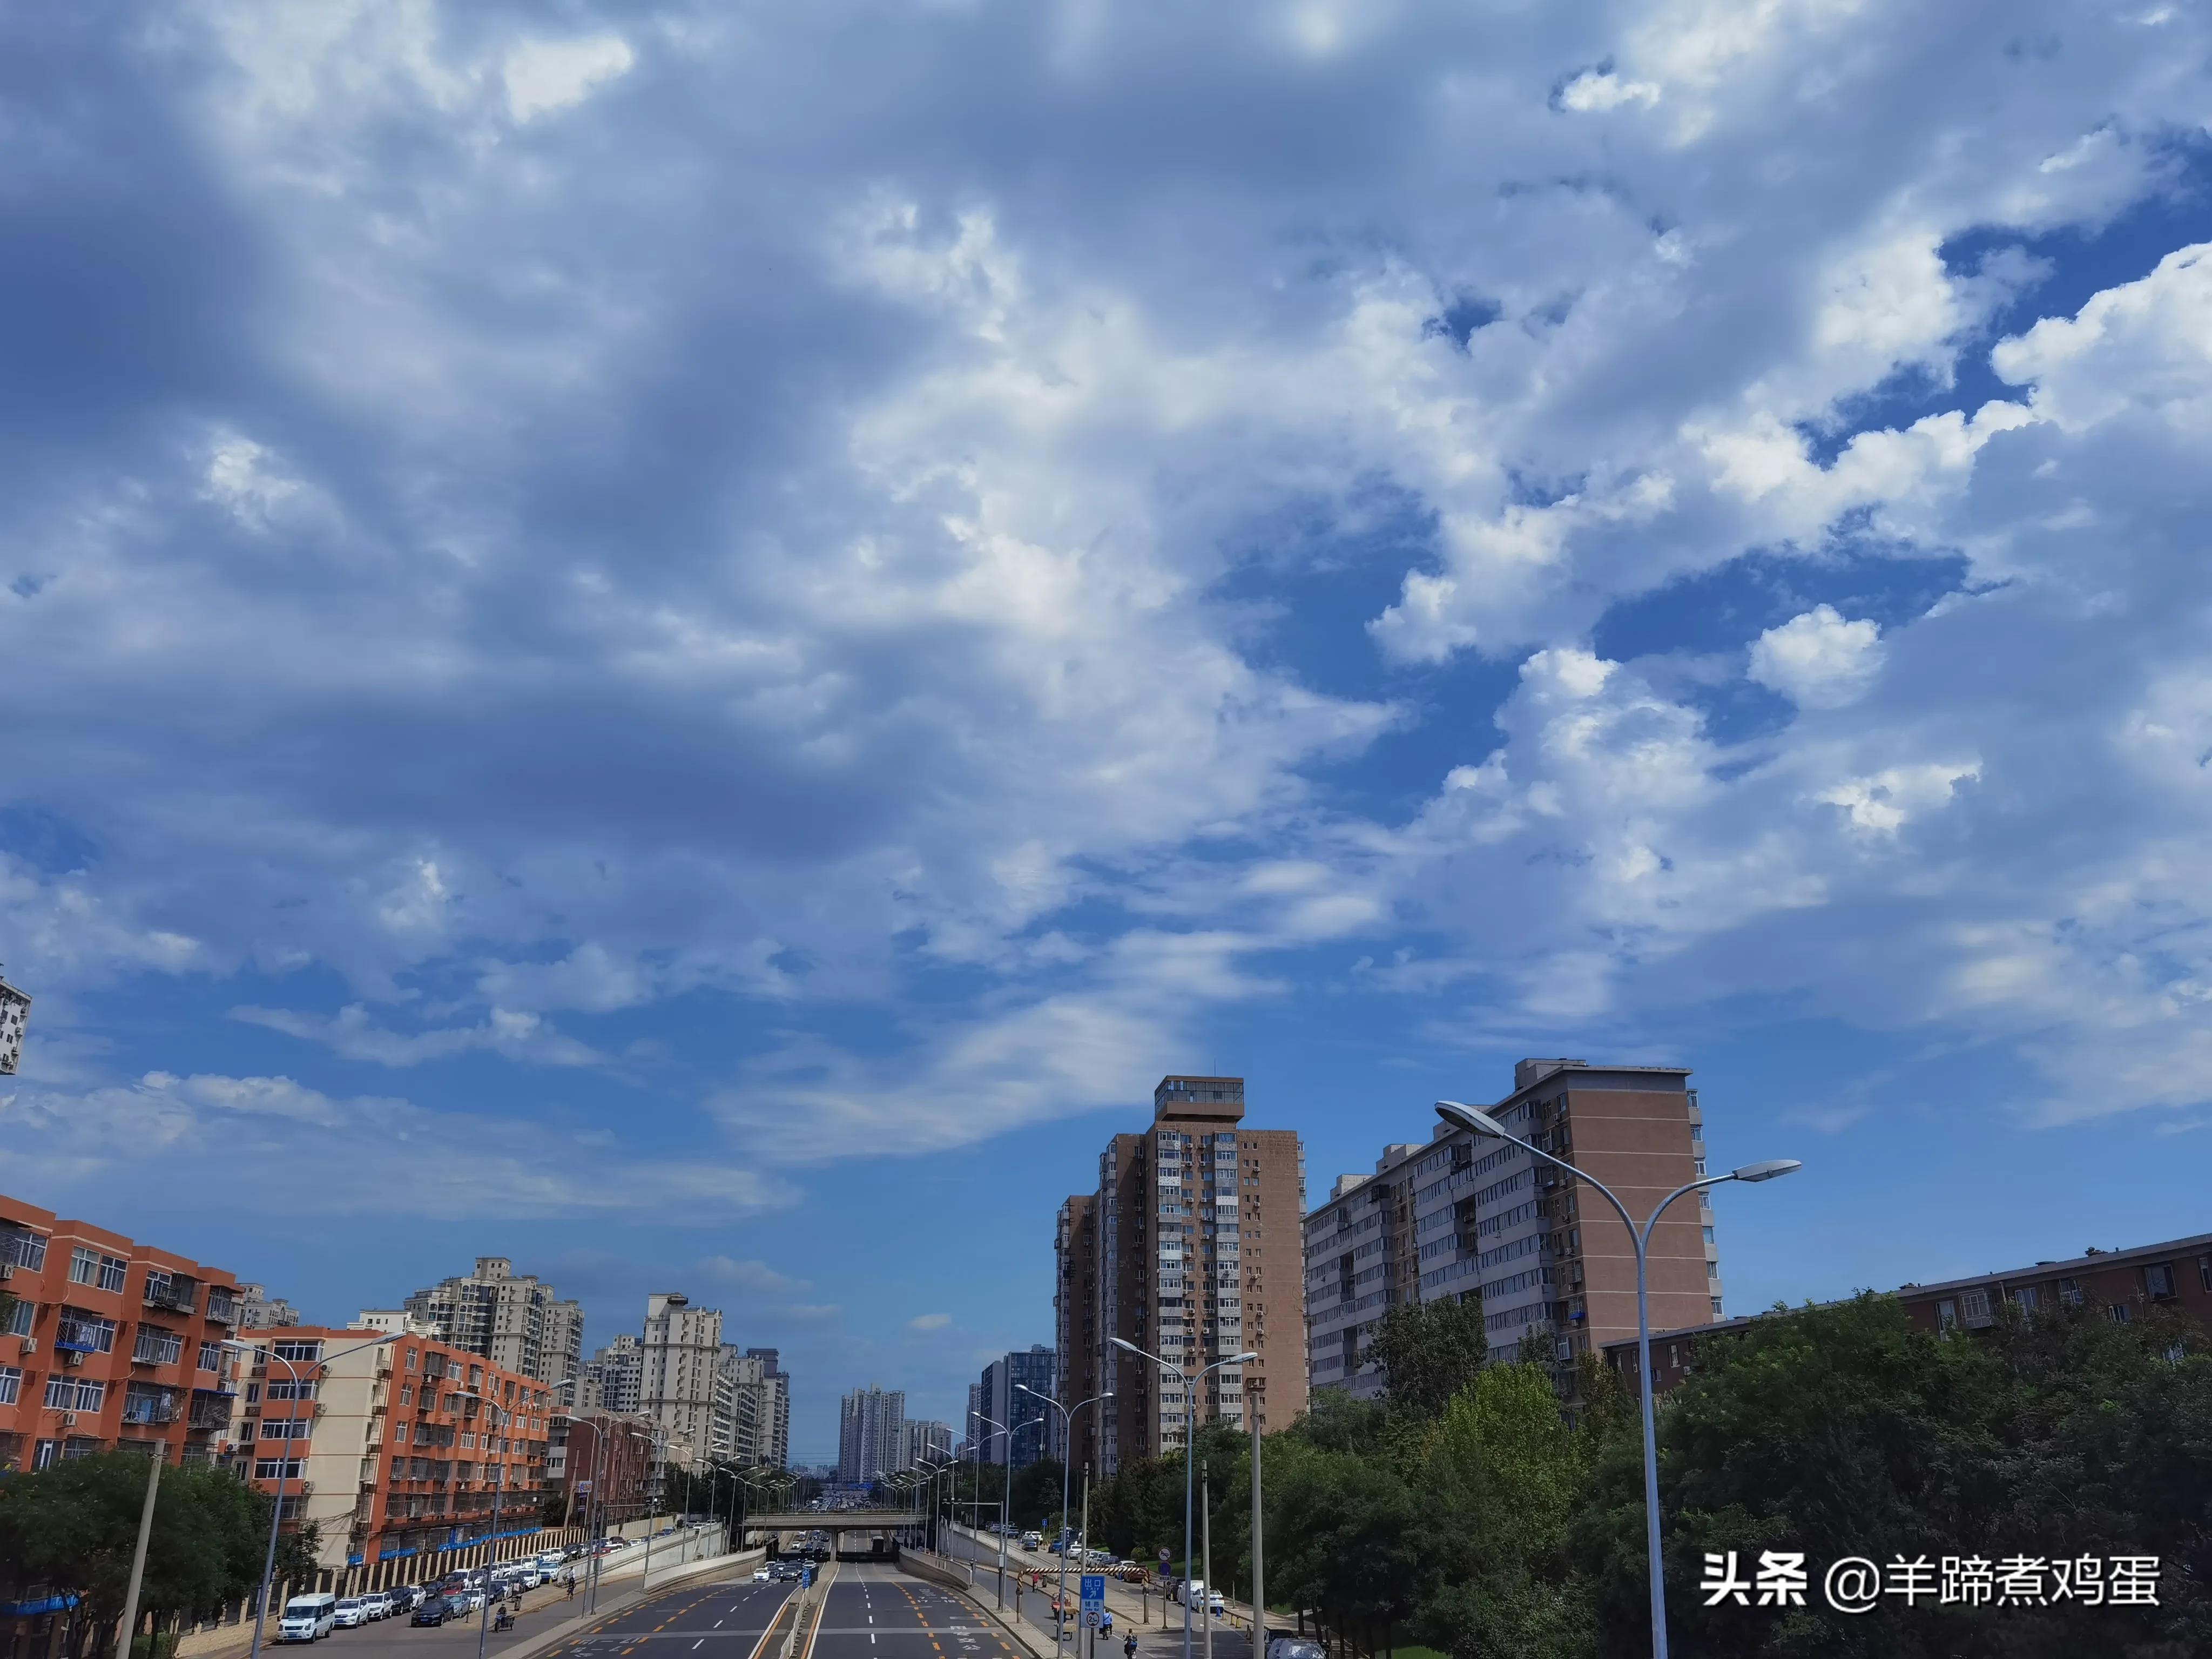 淫雨唤云行日隐耀霞红--雨后北京云空的美丽身影留下霞浓